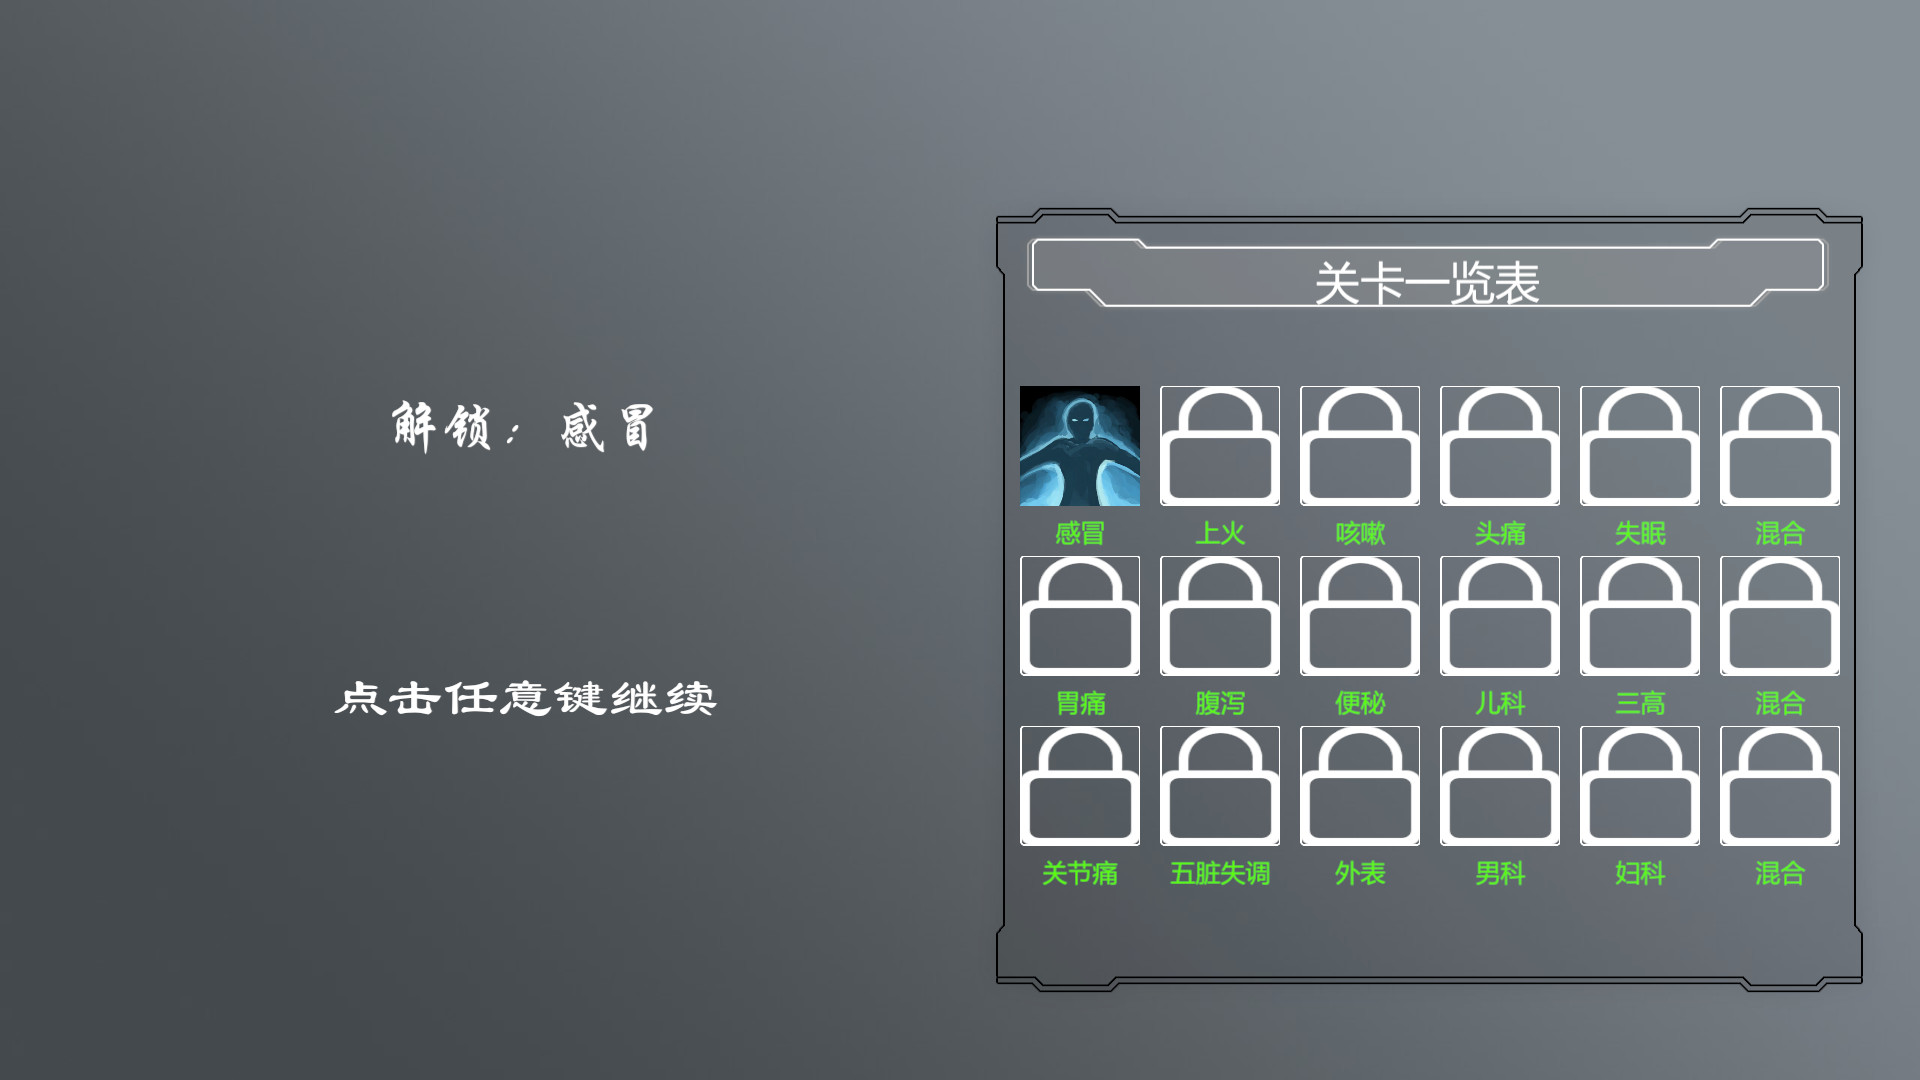 中医模拟器/Traditional Chinese medicine simulator-4